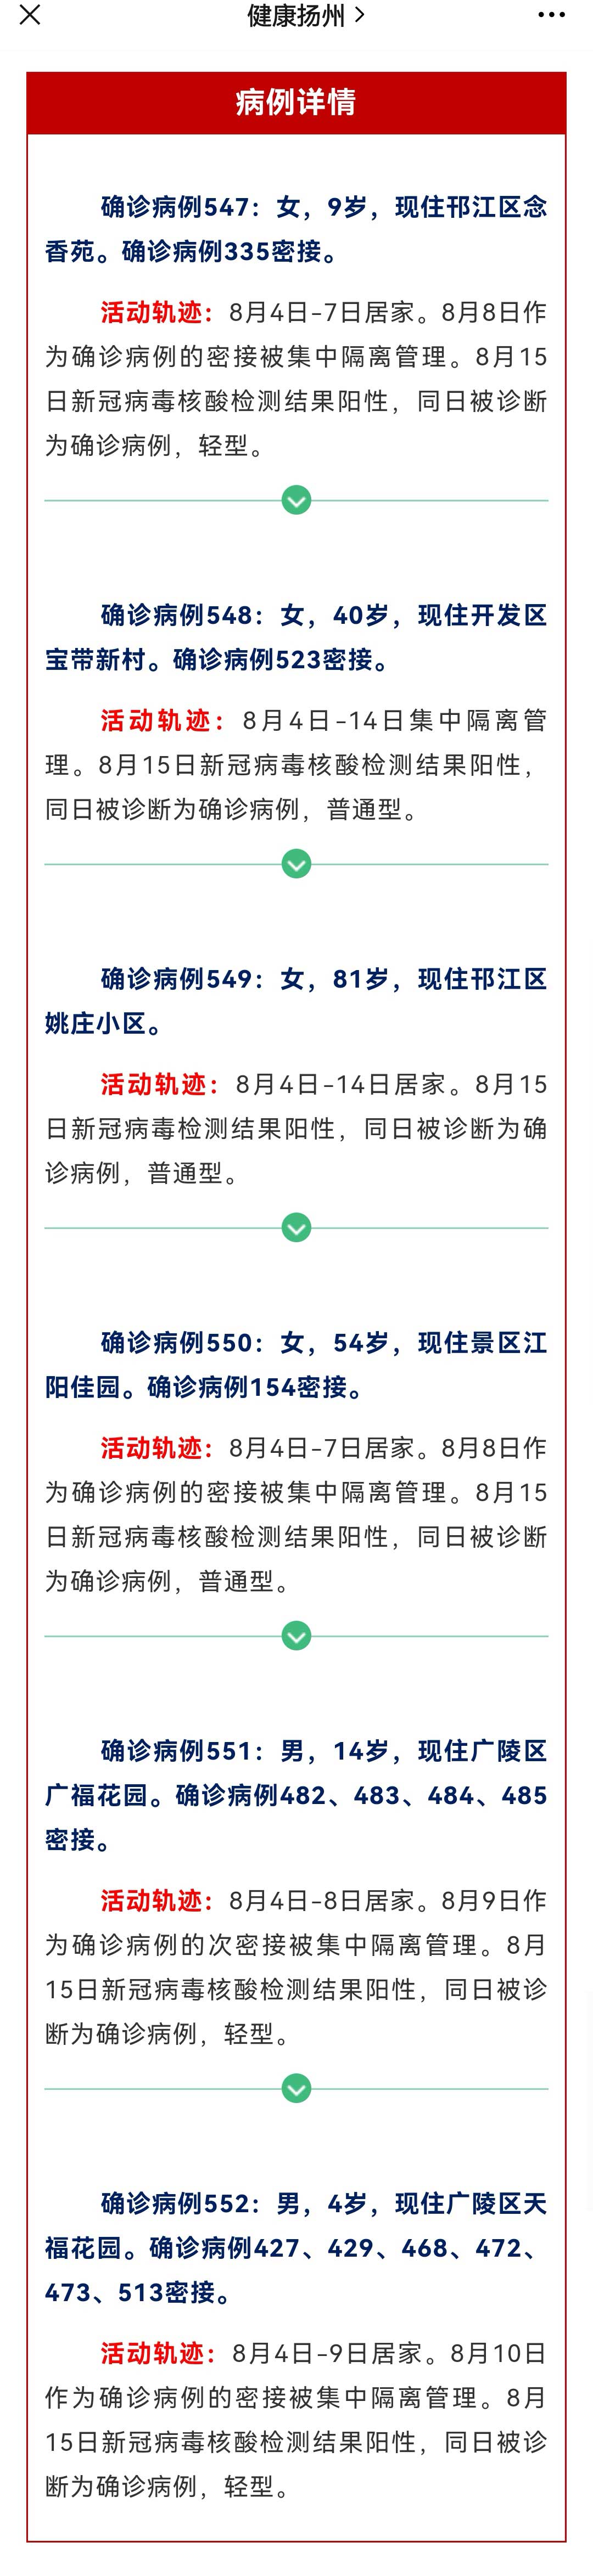 江苏扬州通报6例新增确诊病例活动轨迹